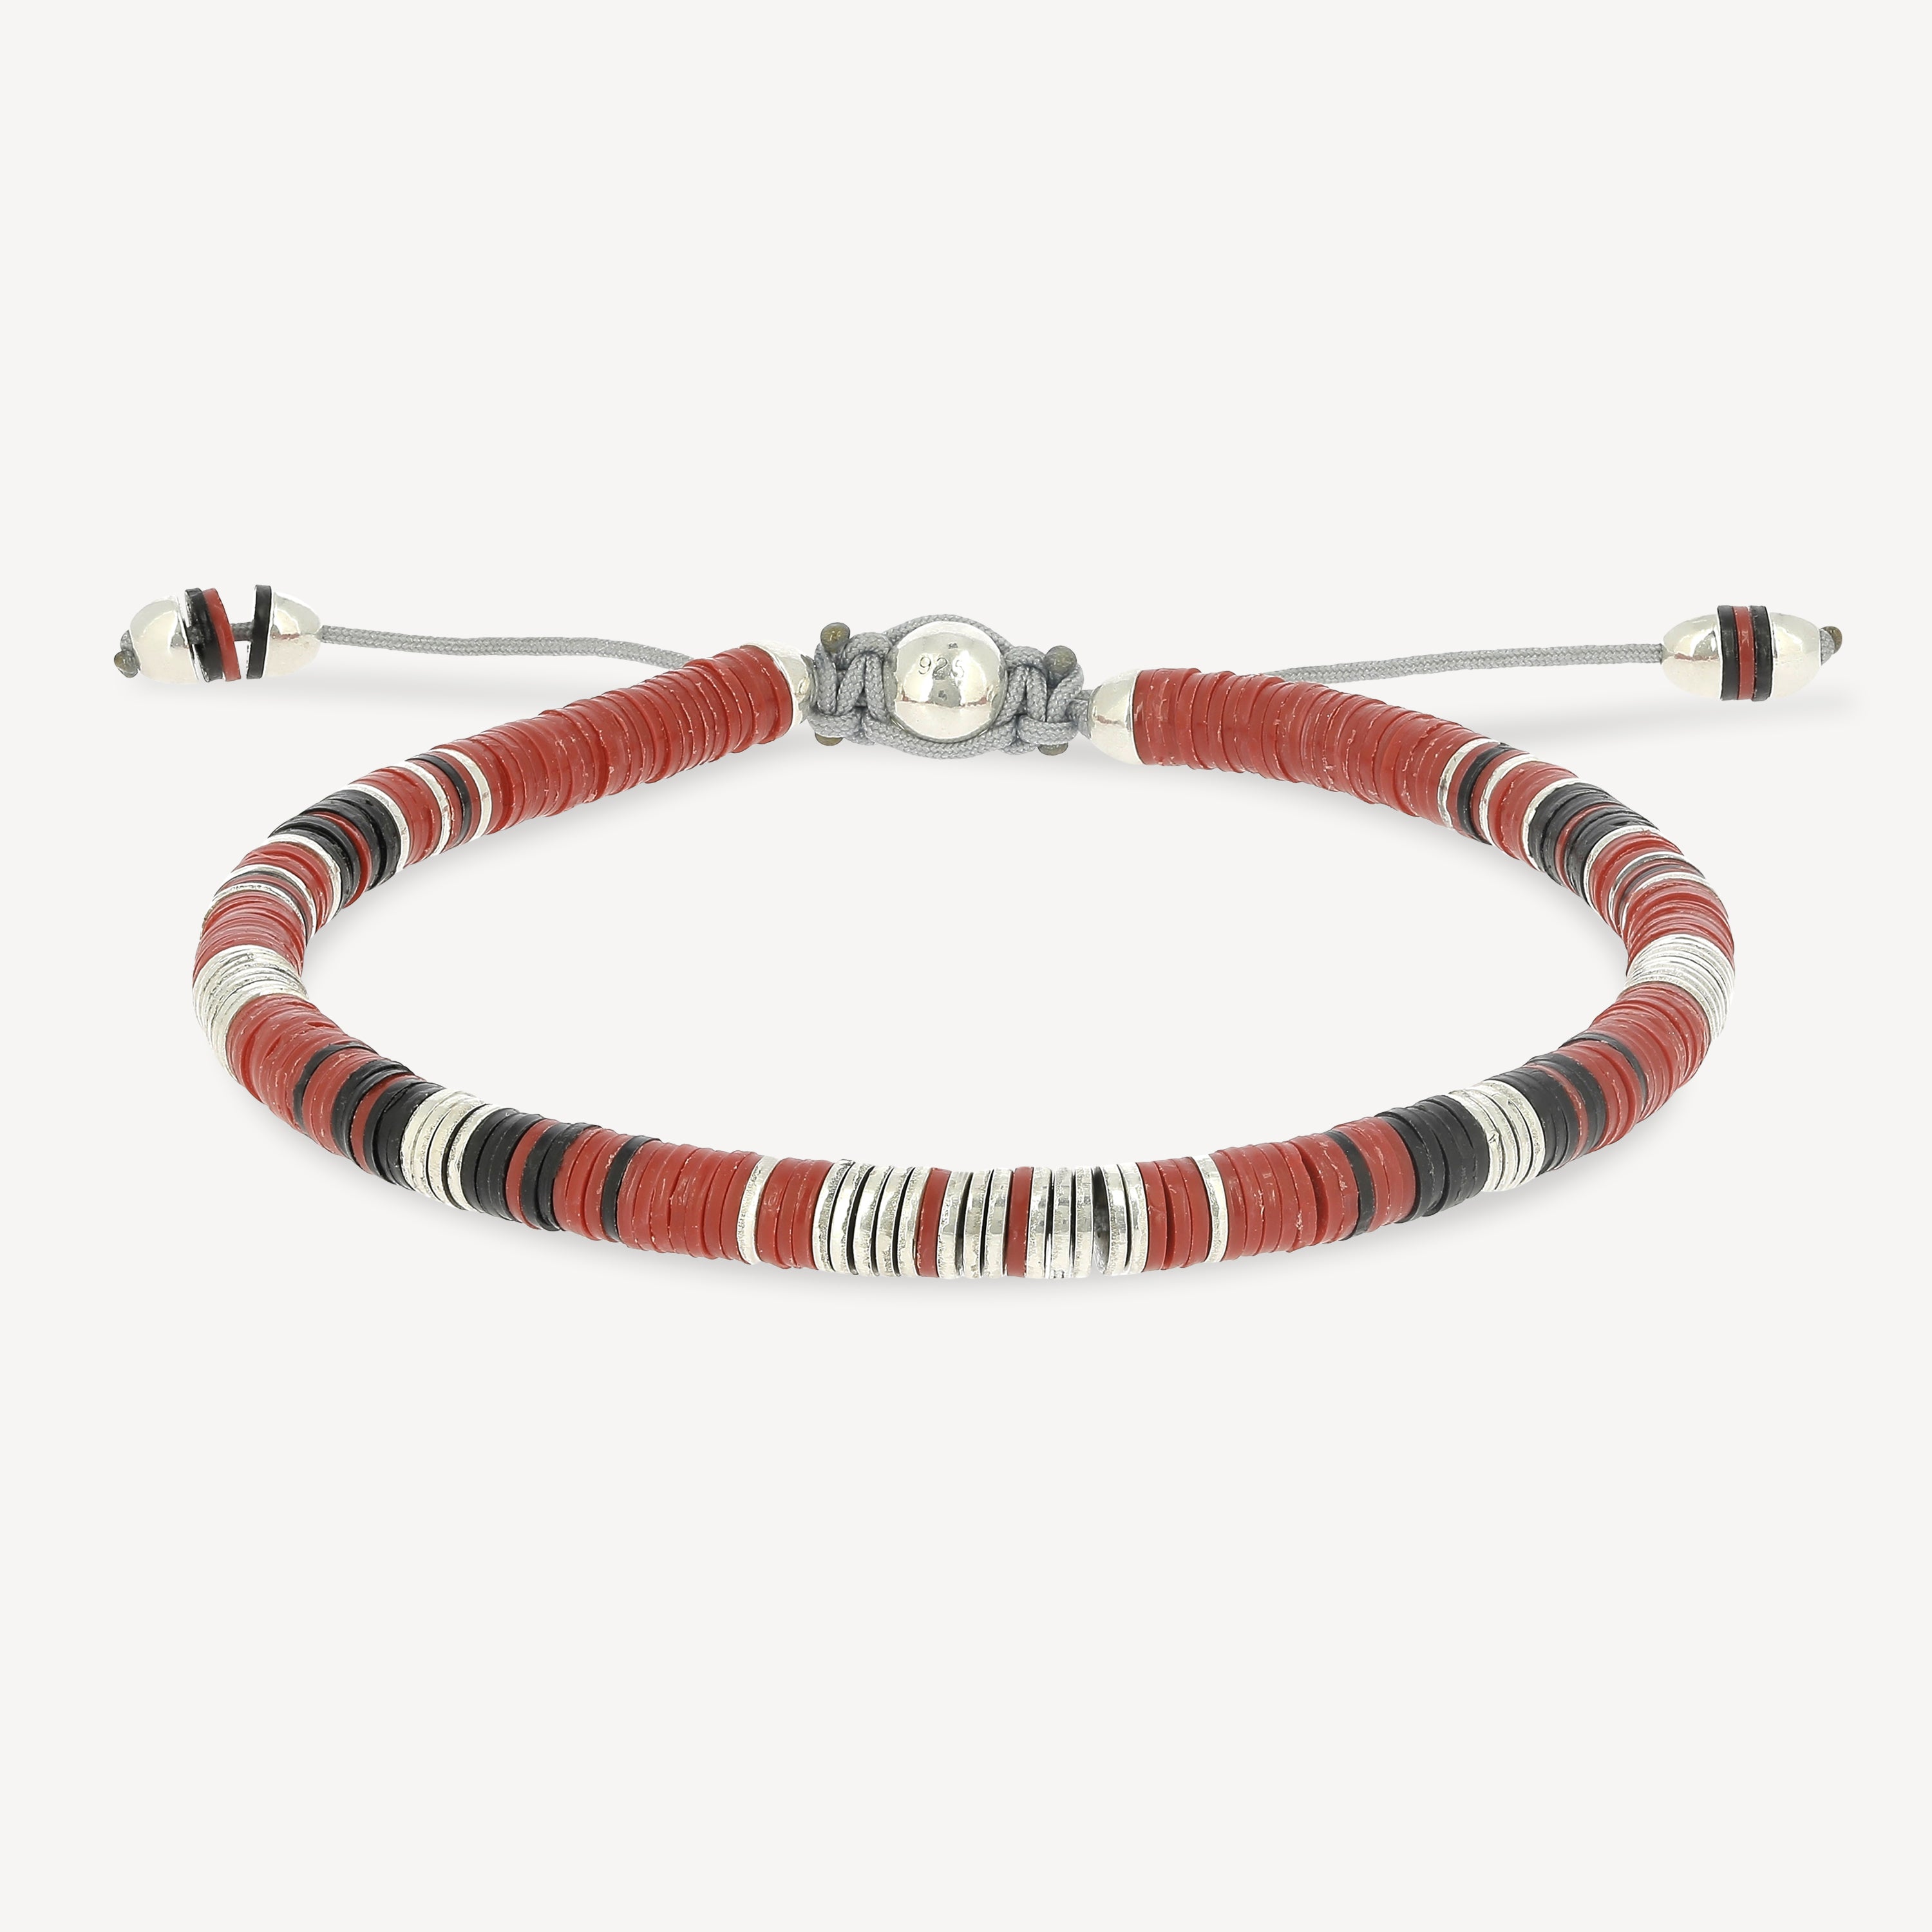 Rizon-Perlen mit rotem Muster und silbernen Scheiben